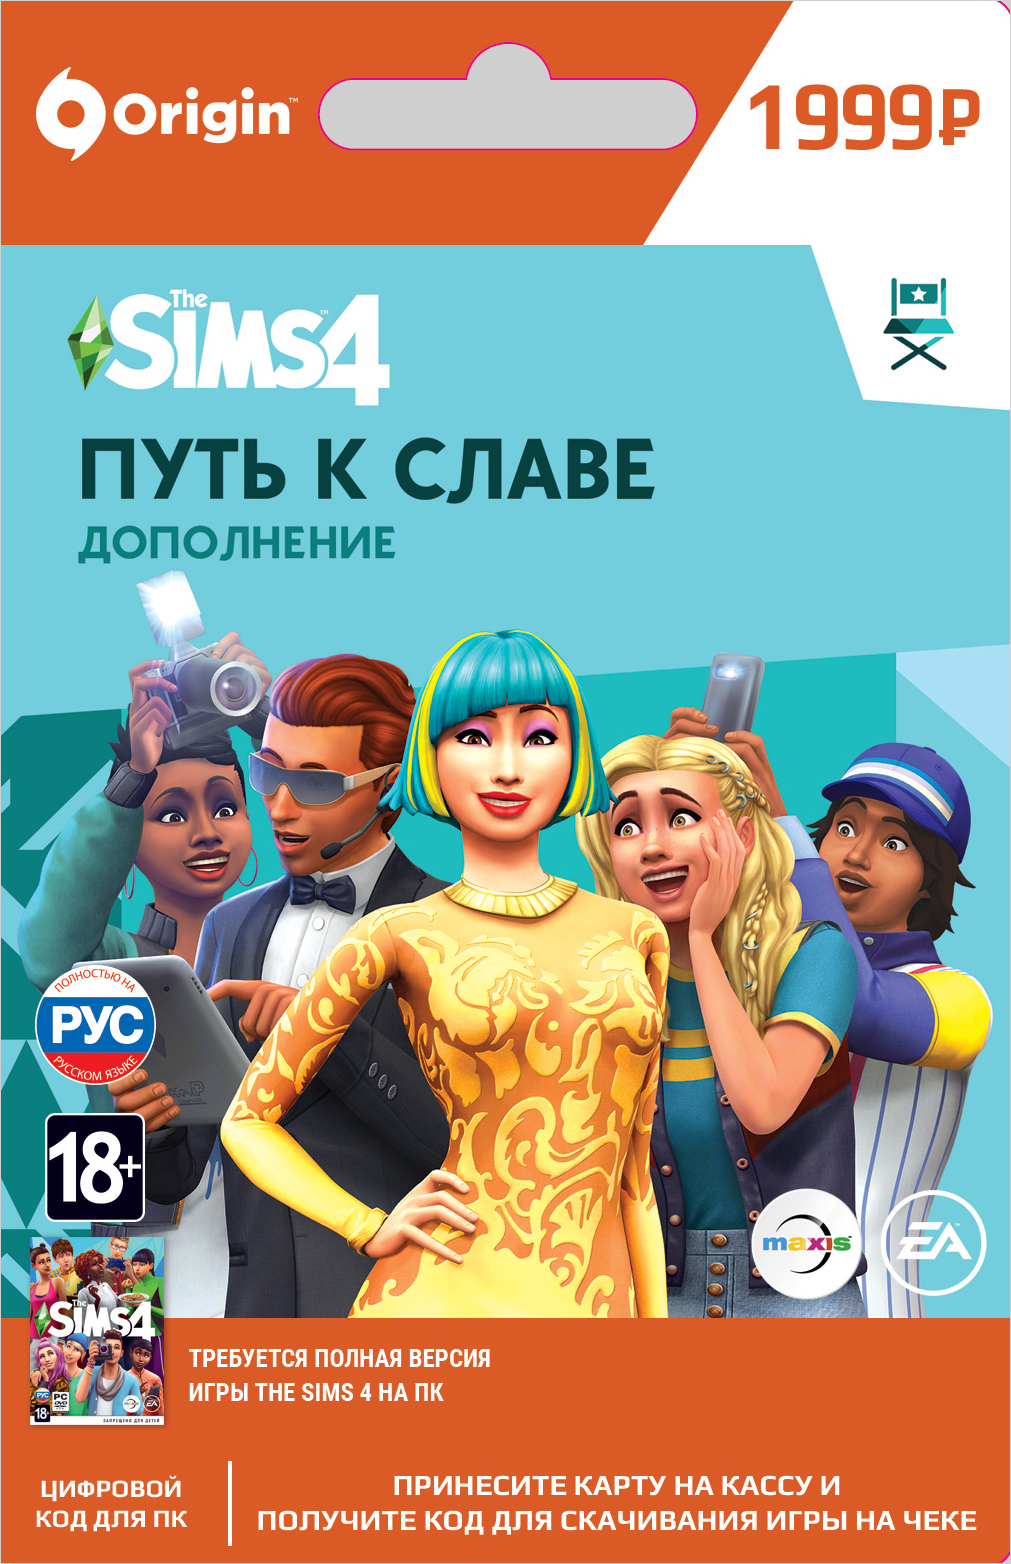 the sims 4. путь к славе. дополнение [pc